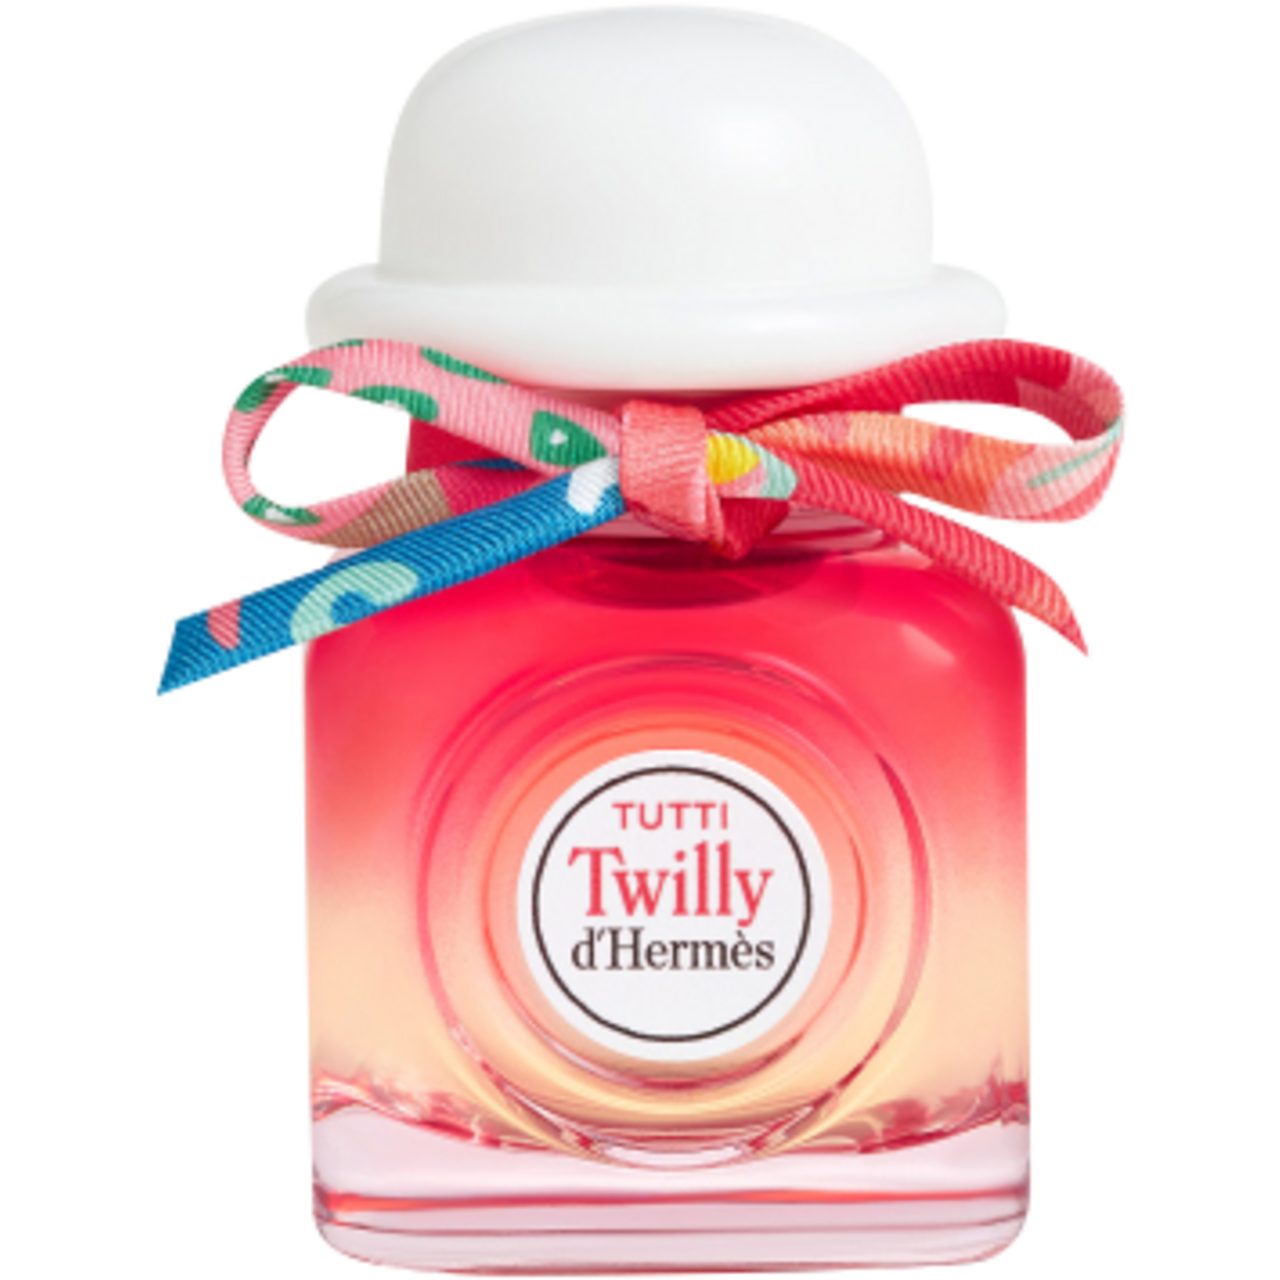 HERMÈS Eau de Parfum Tutti Twilly d'Hermès E.d.P. Nat. Spray